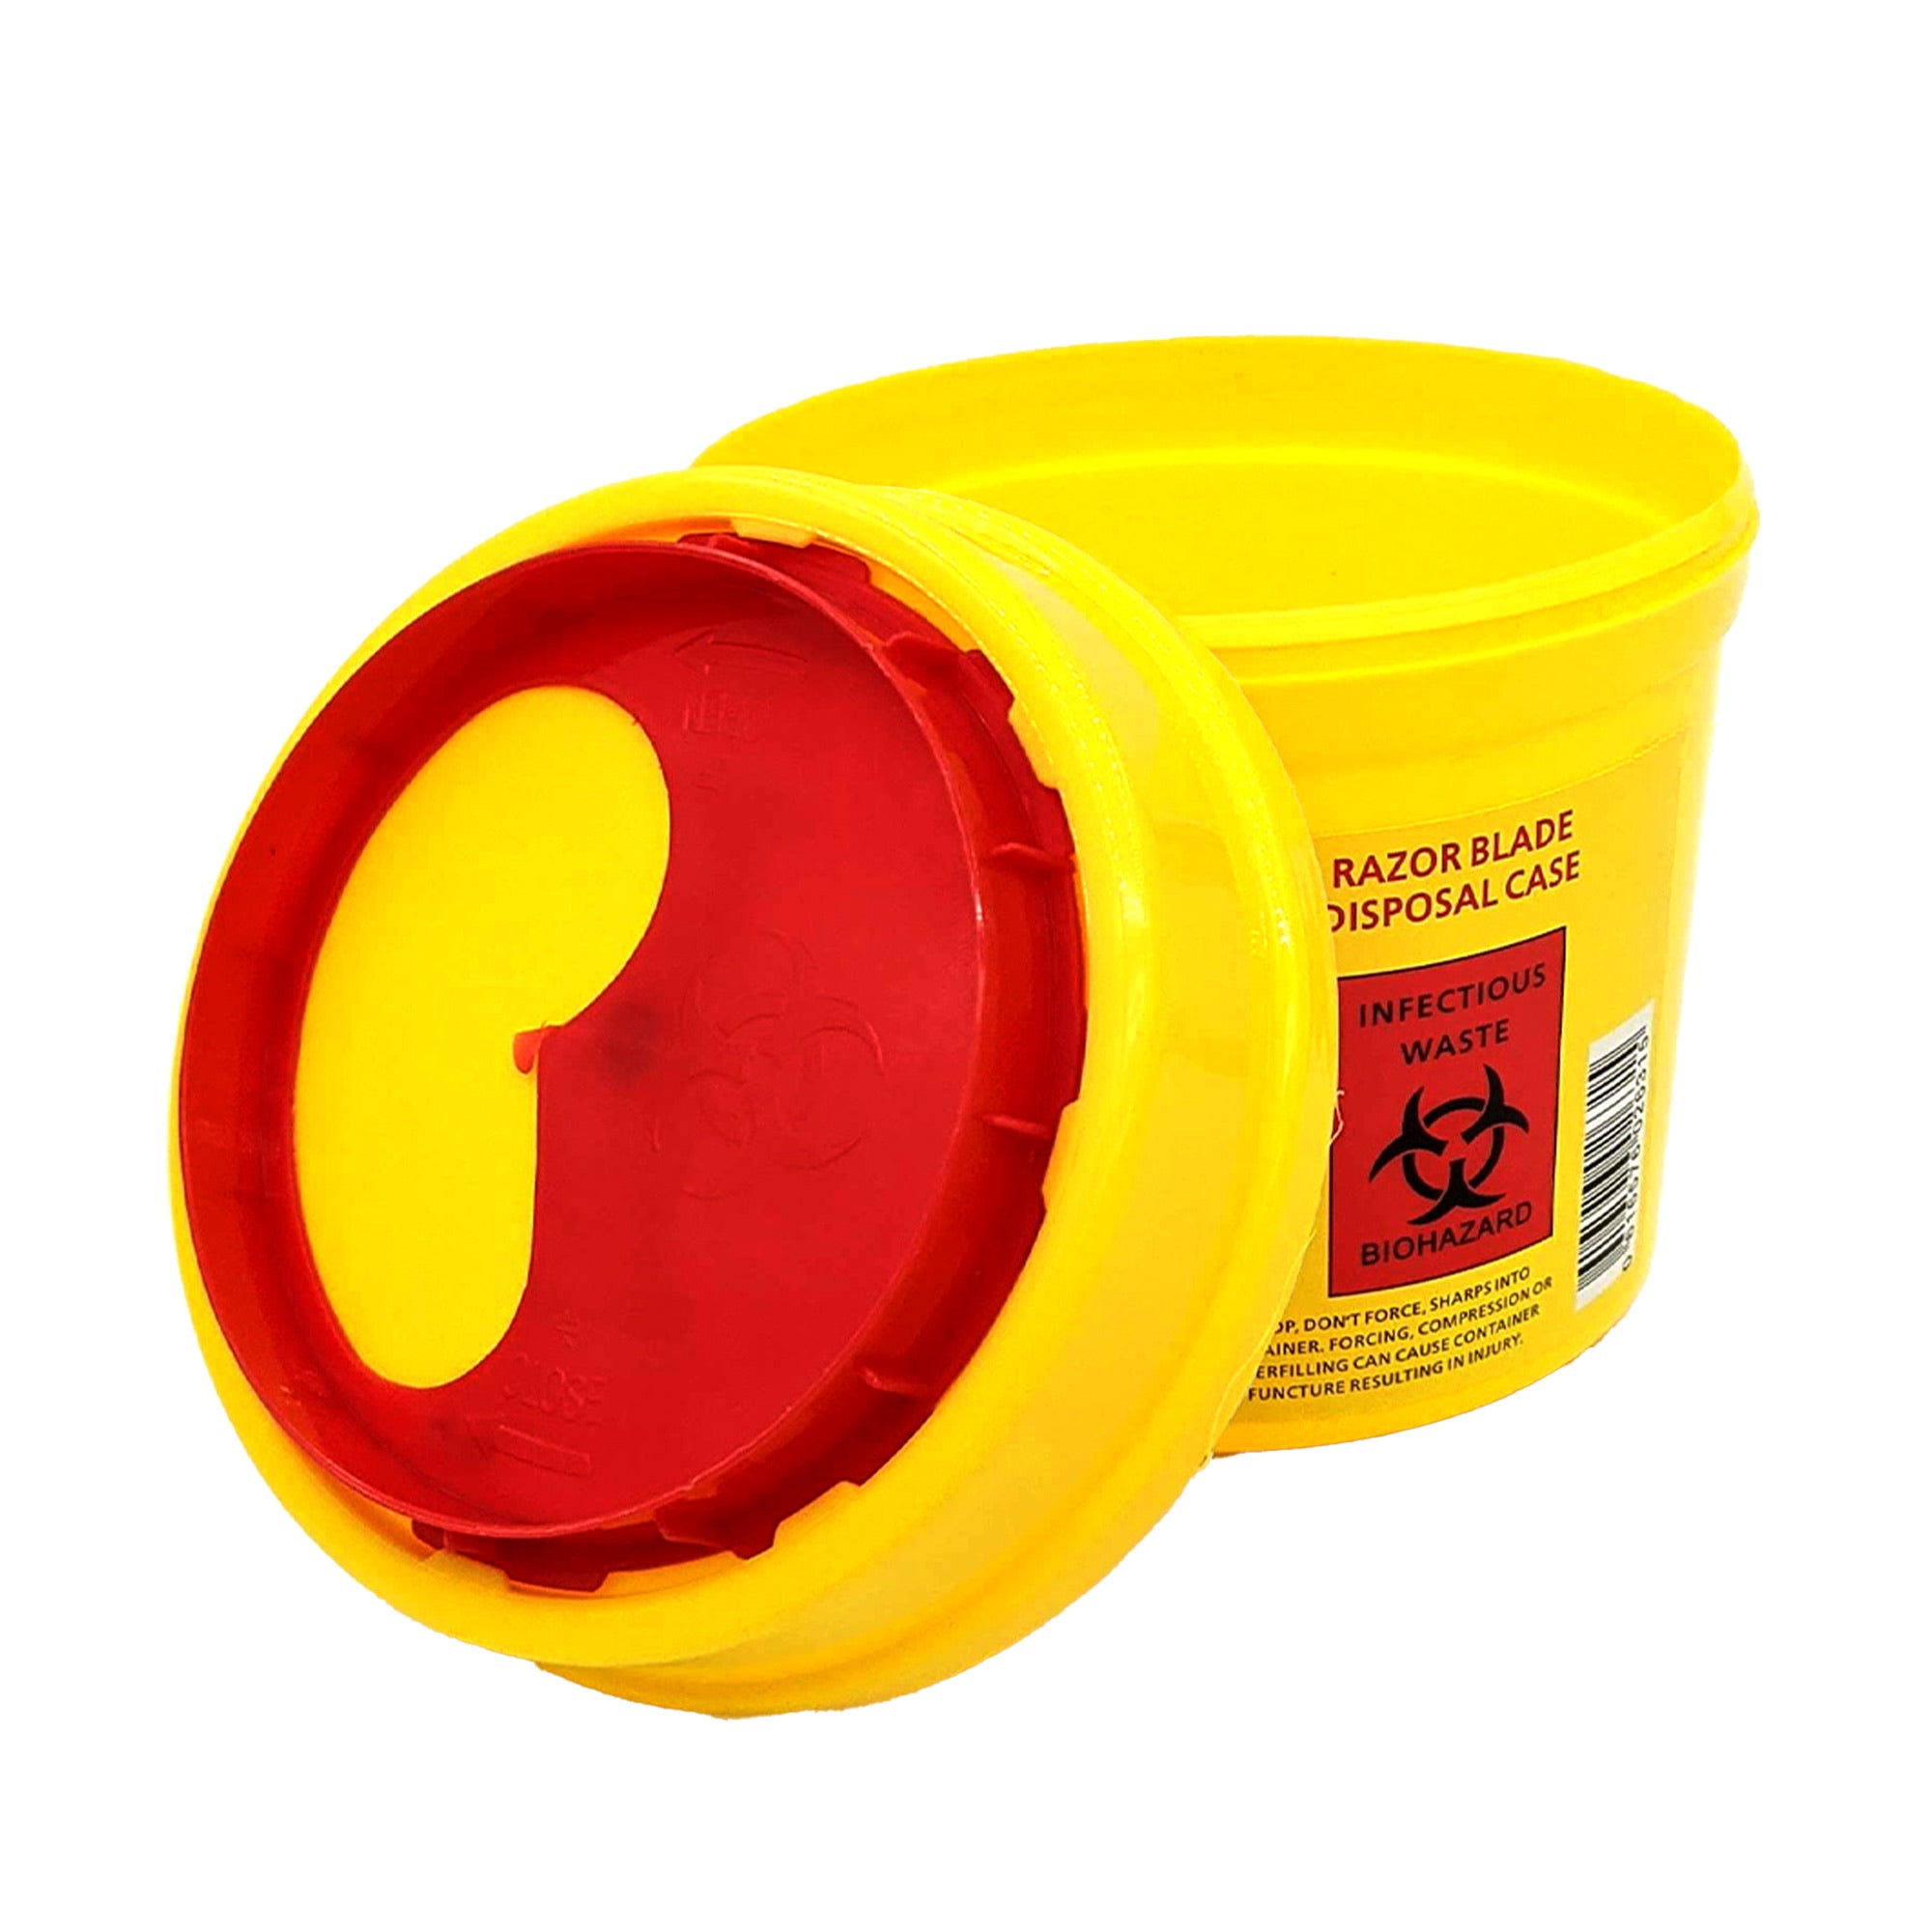 Gabri - Razor Blade Round Disposal Bin Case (Yellow-Red)